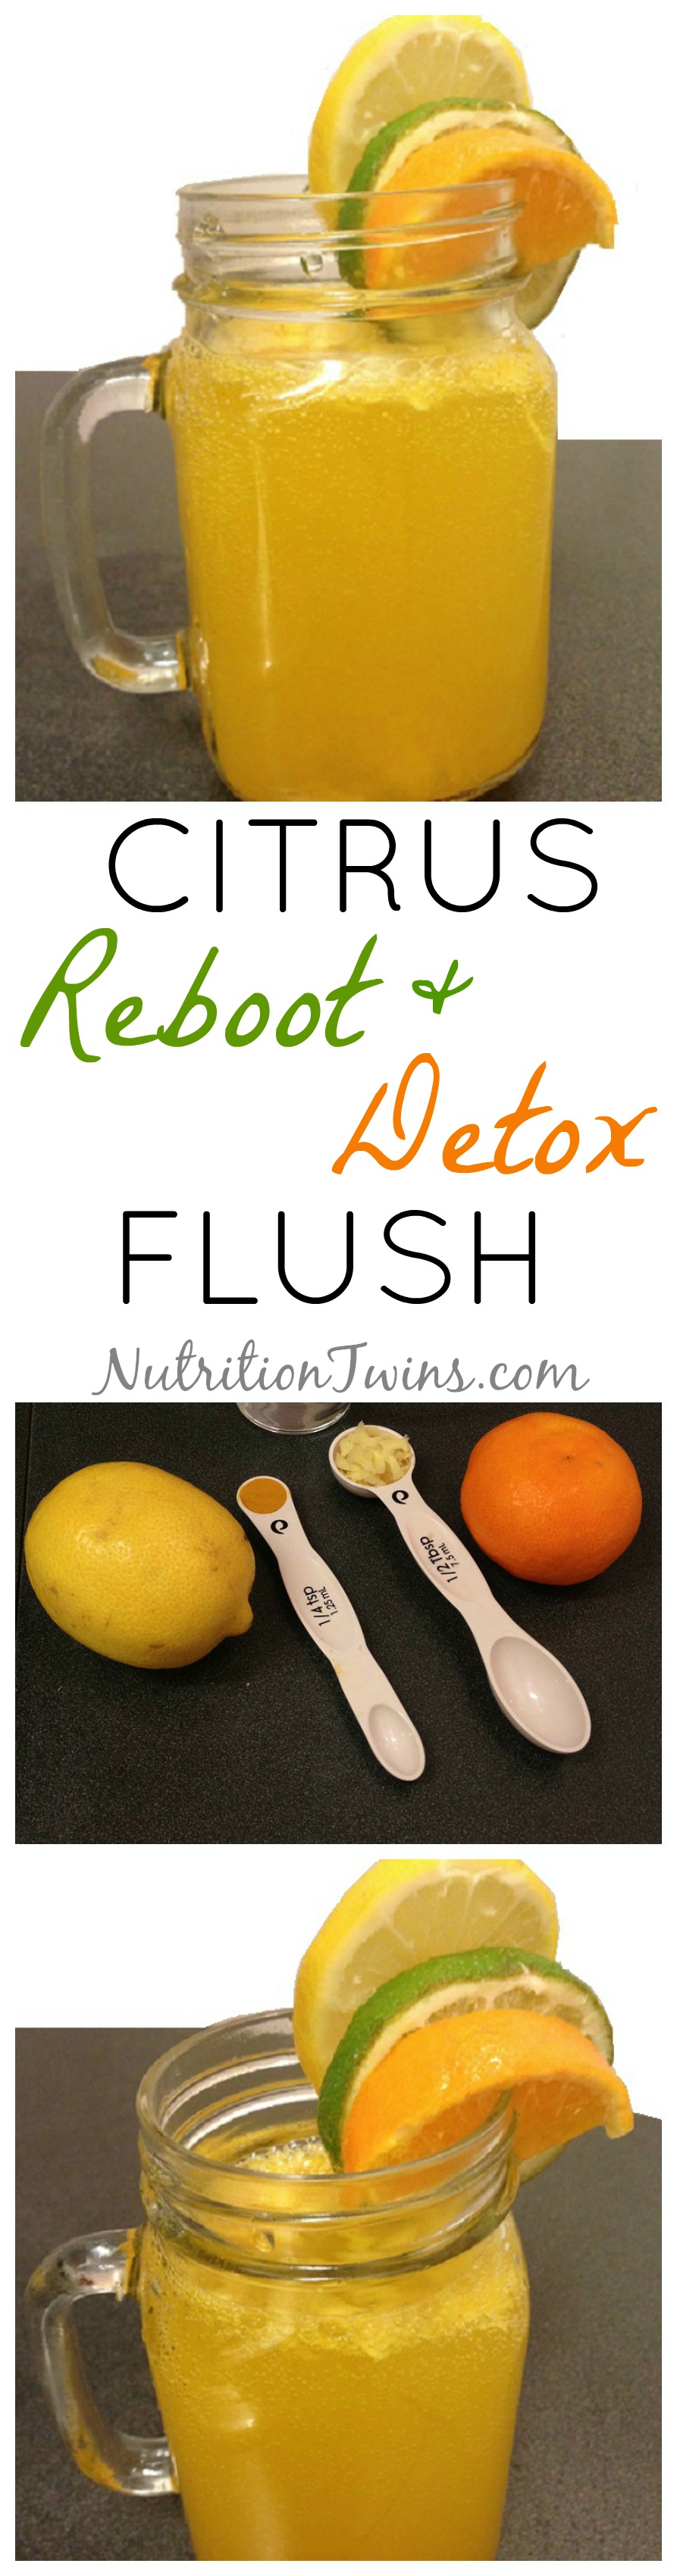 Lemon_citrus_Reboot_detox_flush_logo